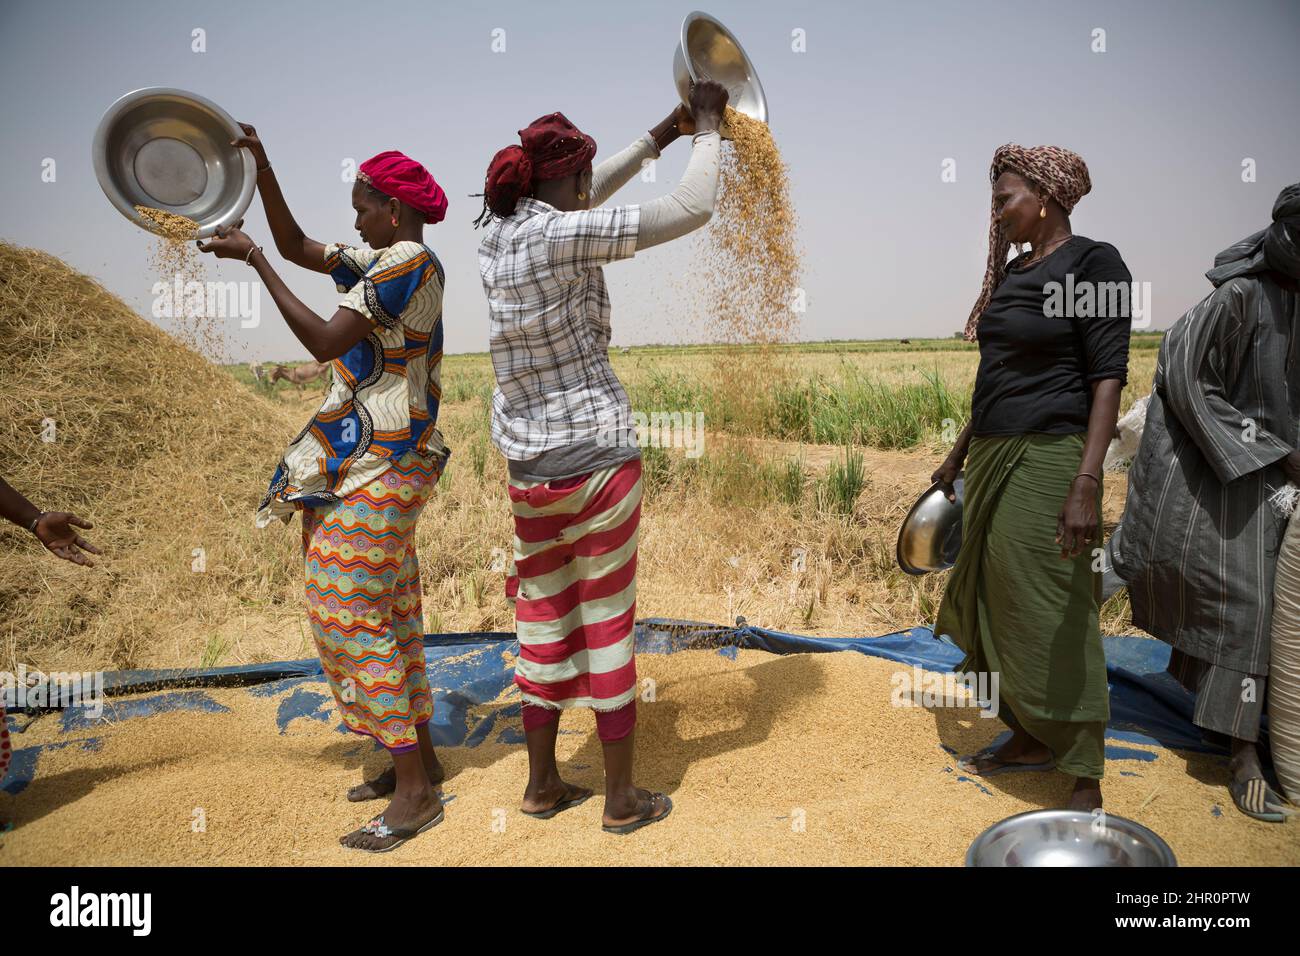 Les femmes travaillent ensemble pour battre et récolter des tiges et des céréales de riz fraîchement récoltées dans le delta du fleuve Sénégal, dans le nord du Sénégal, en Afrique de l'Ouest. Banque D'Images